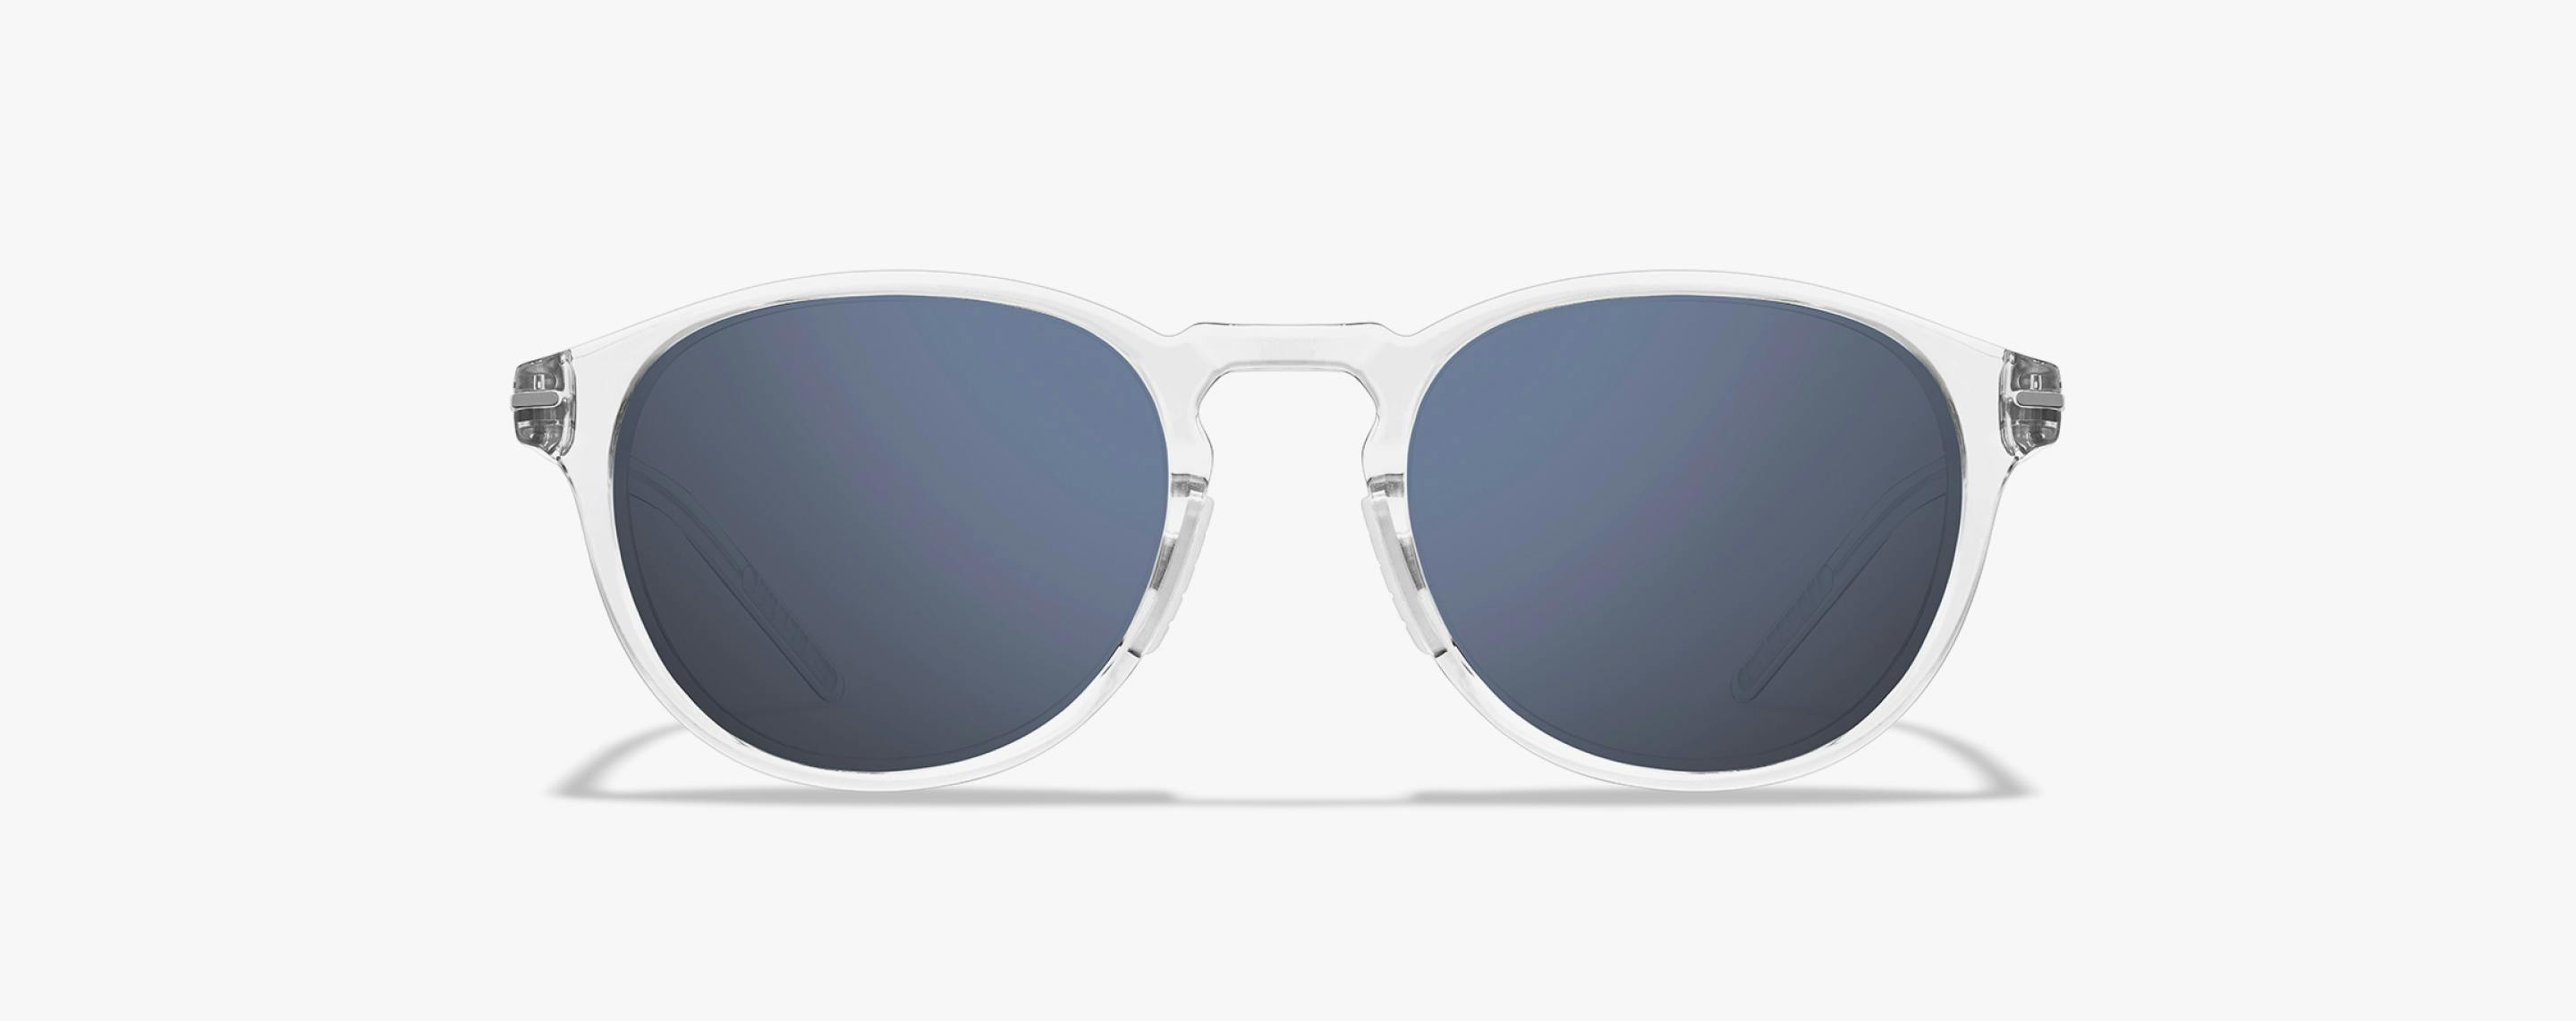 Oslo Sunglasses  Ultra Lightweight Round Sunglasses